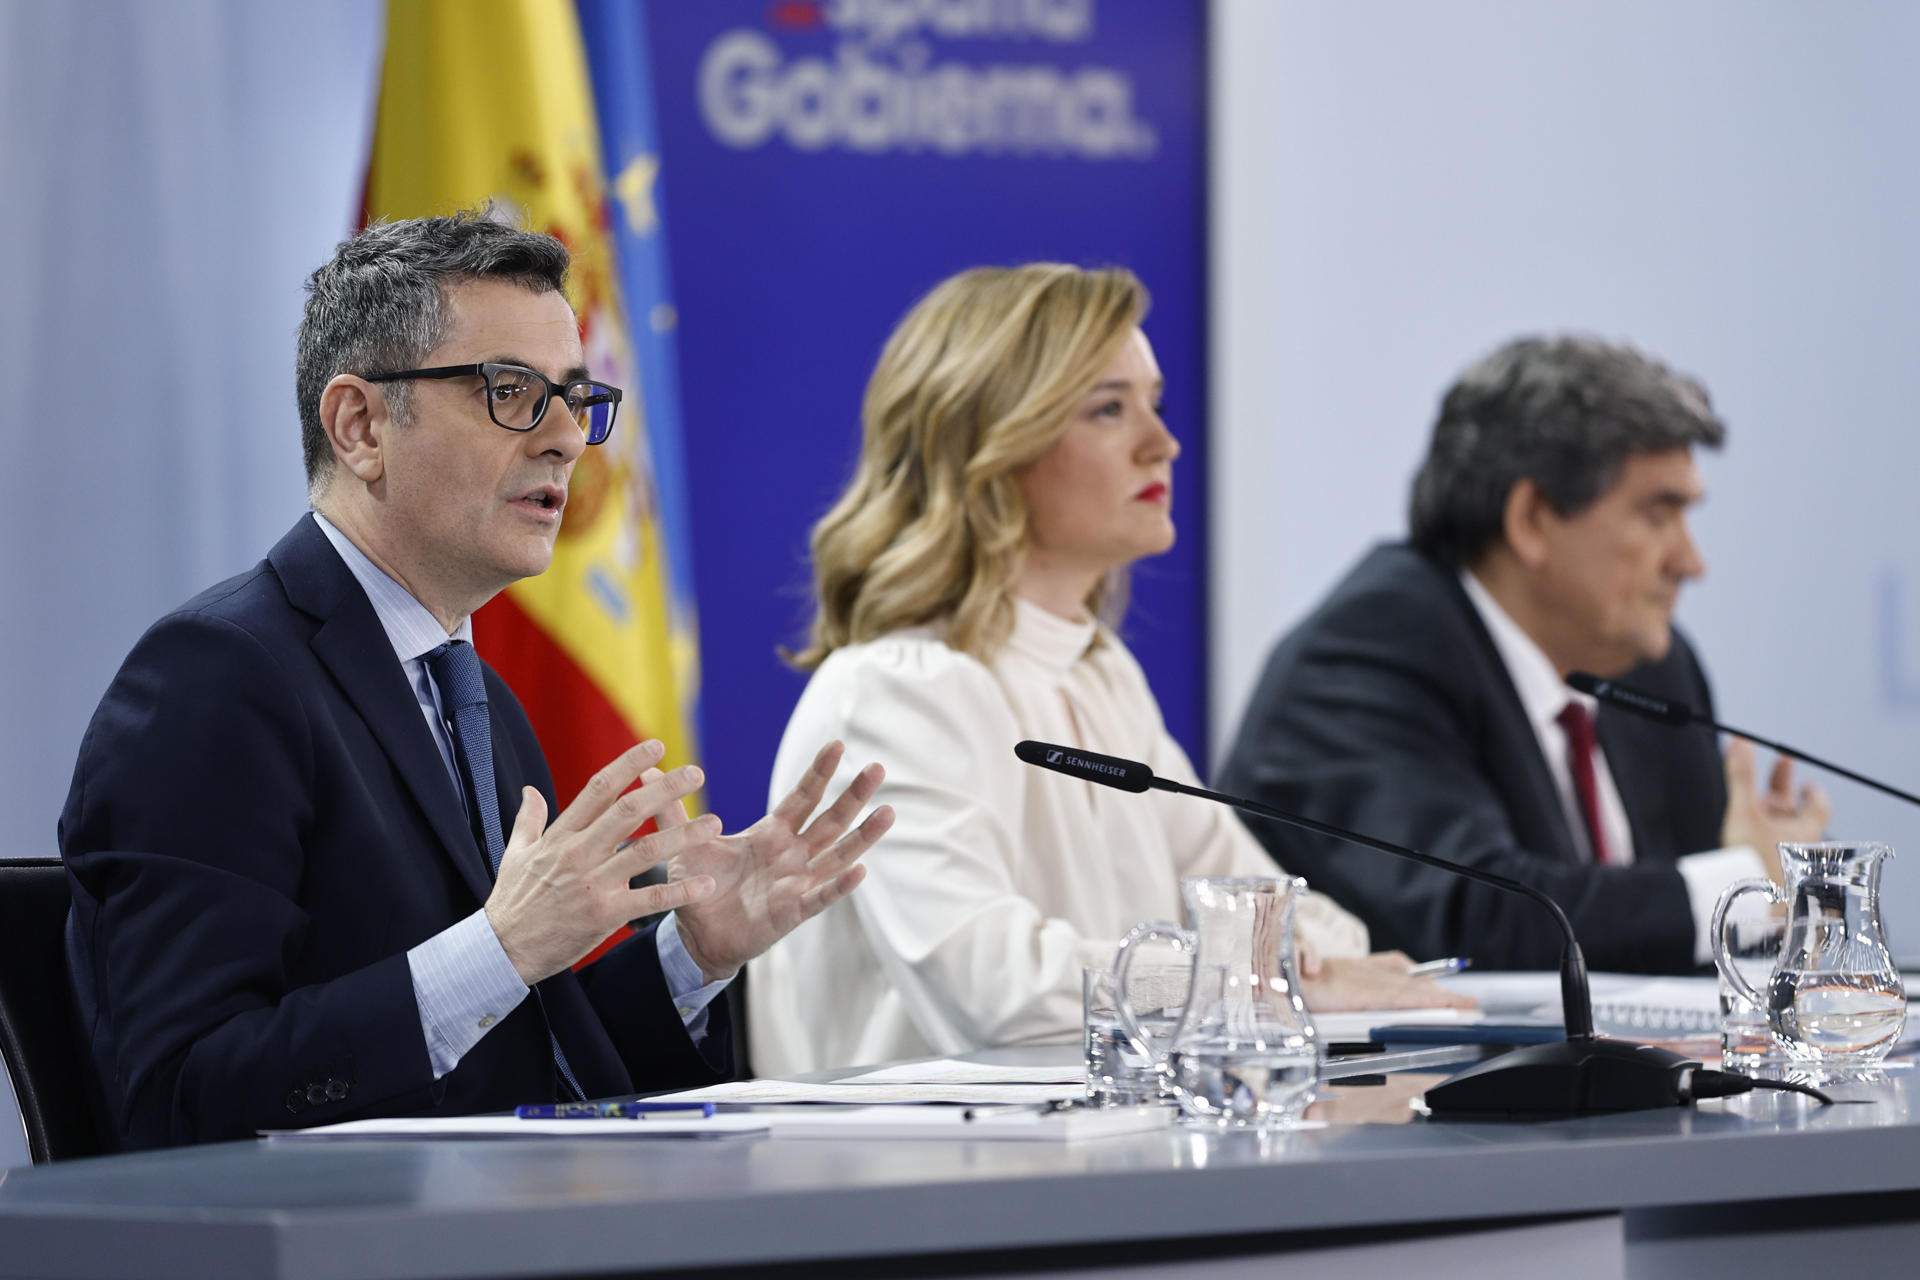 El govern espanyol, inflexible, reitera el veto a la compareixença de jutges al Congrés